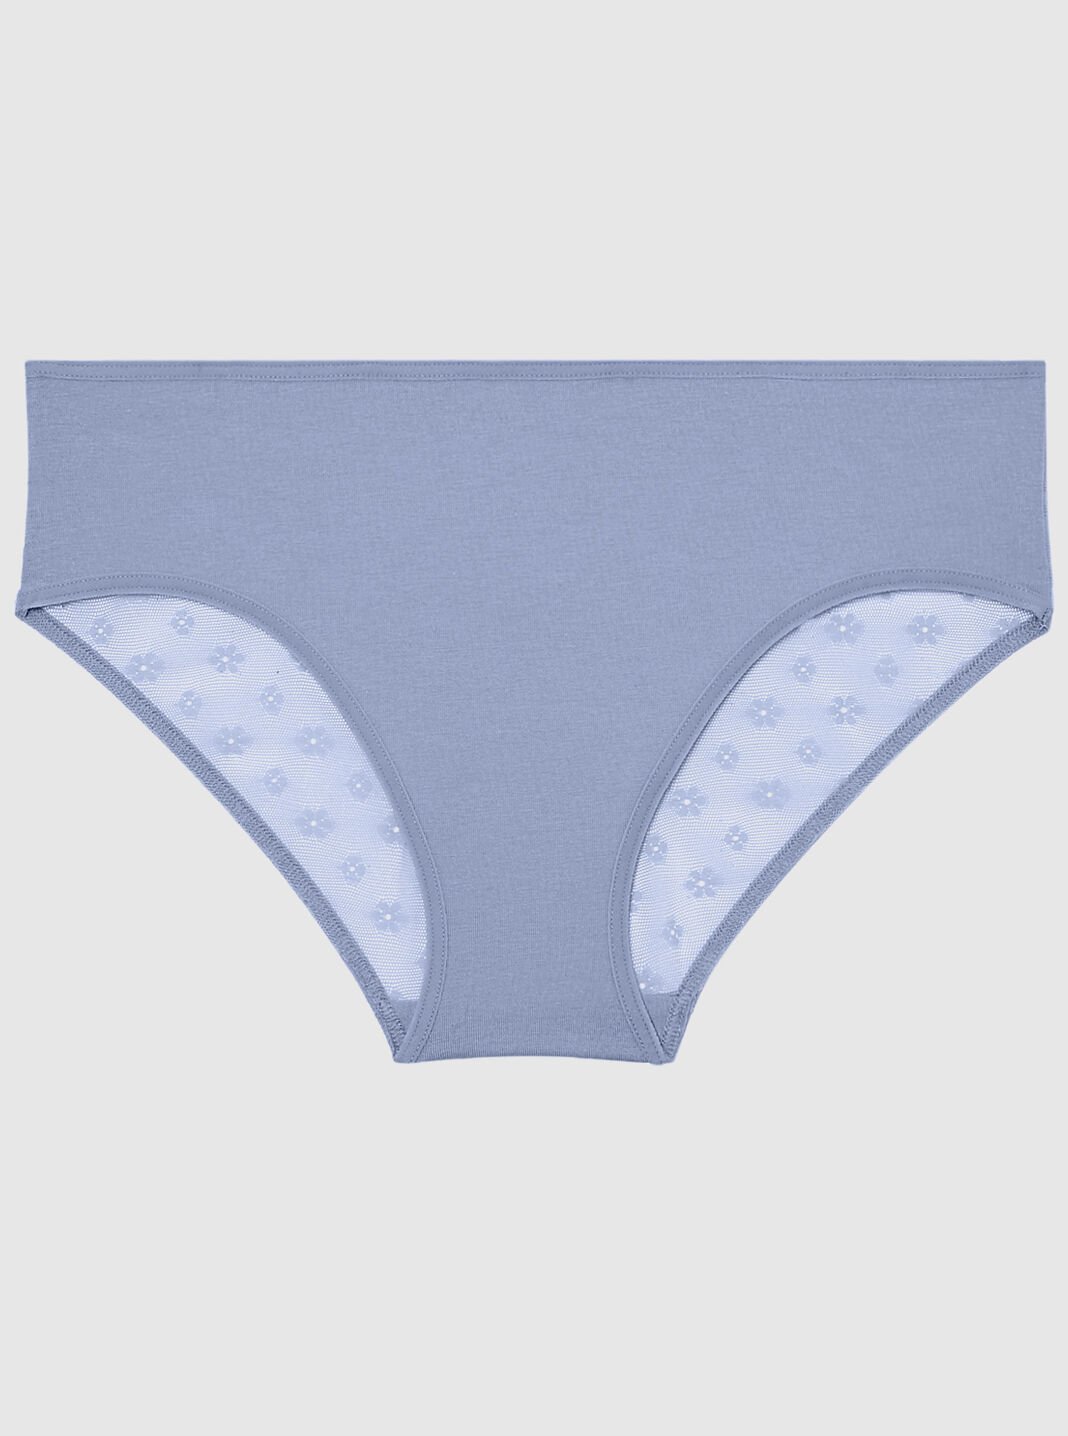 GWAABD Cheekster Panties for Women High Waisted Leak Proof Panties  Underwear for Women Leak Proof Cotton Overnight Menstrual Panties Briefs